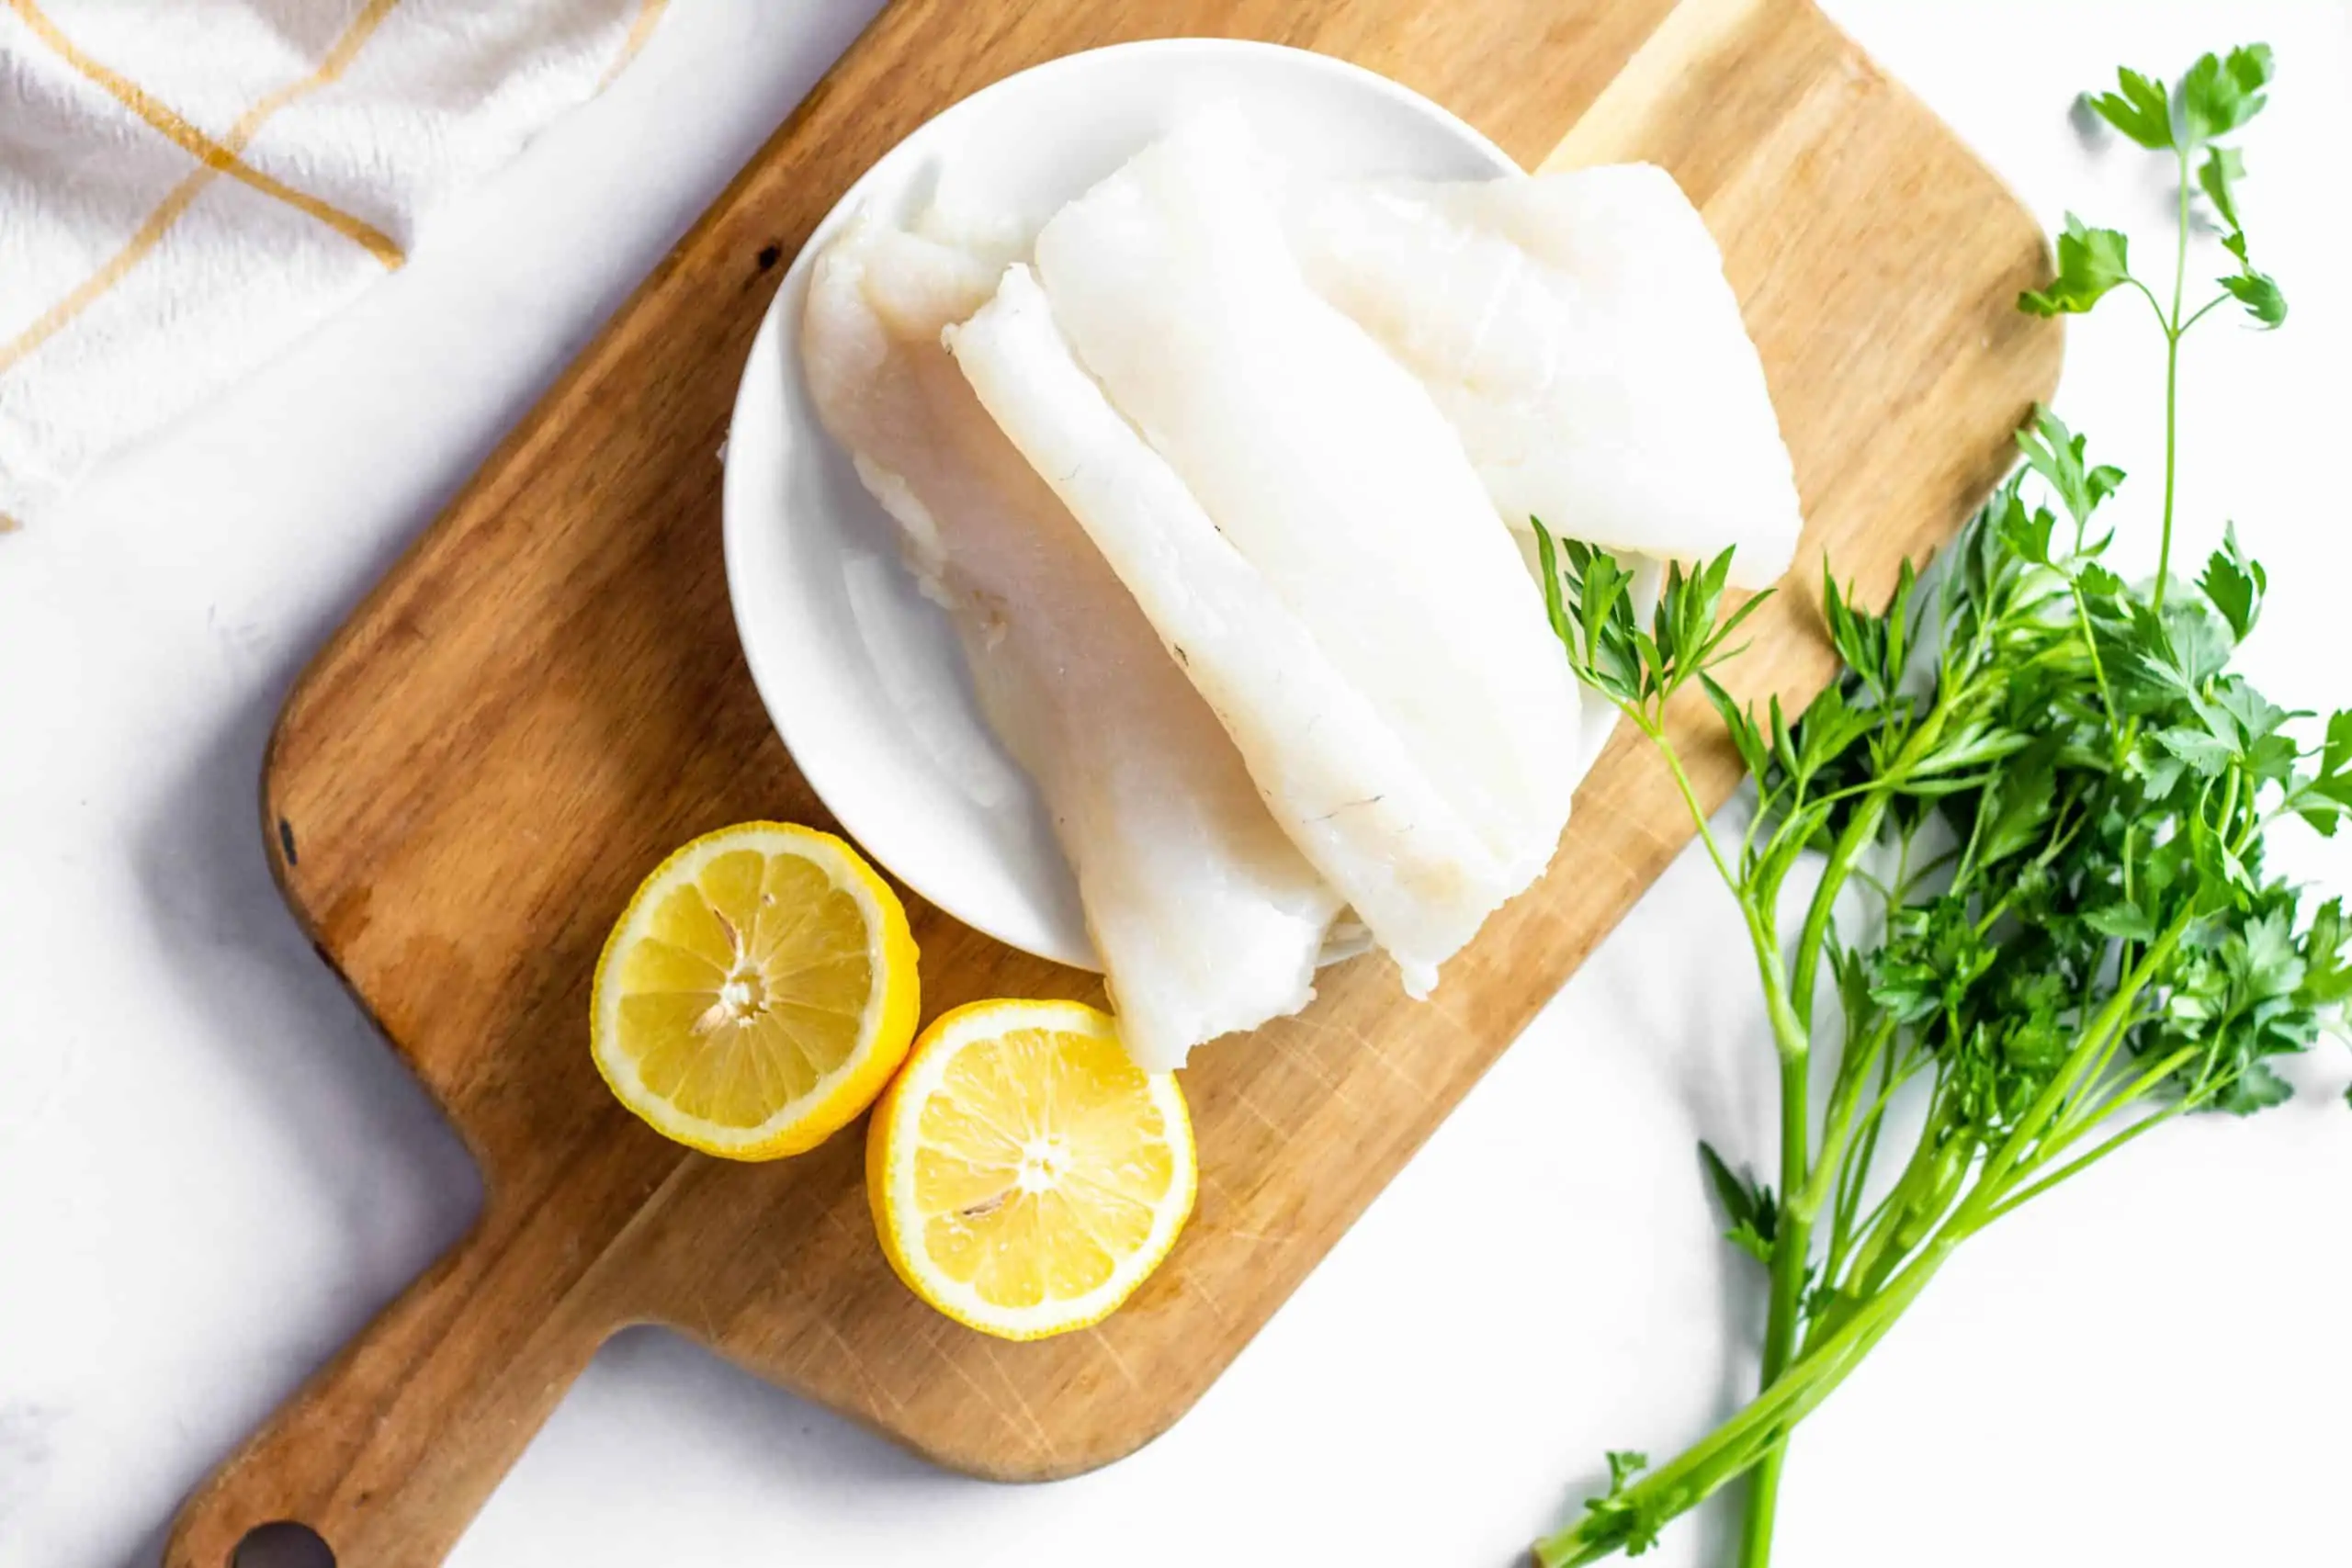 Baked Lemon White Fish #seafoodrecipe #healthydinner #tararochfordnutrition